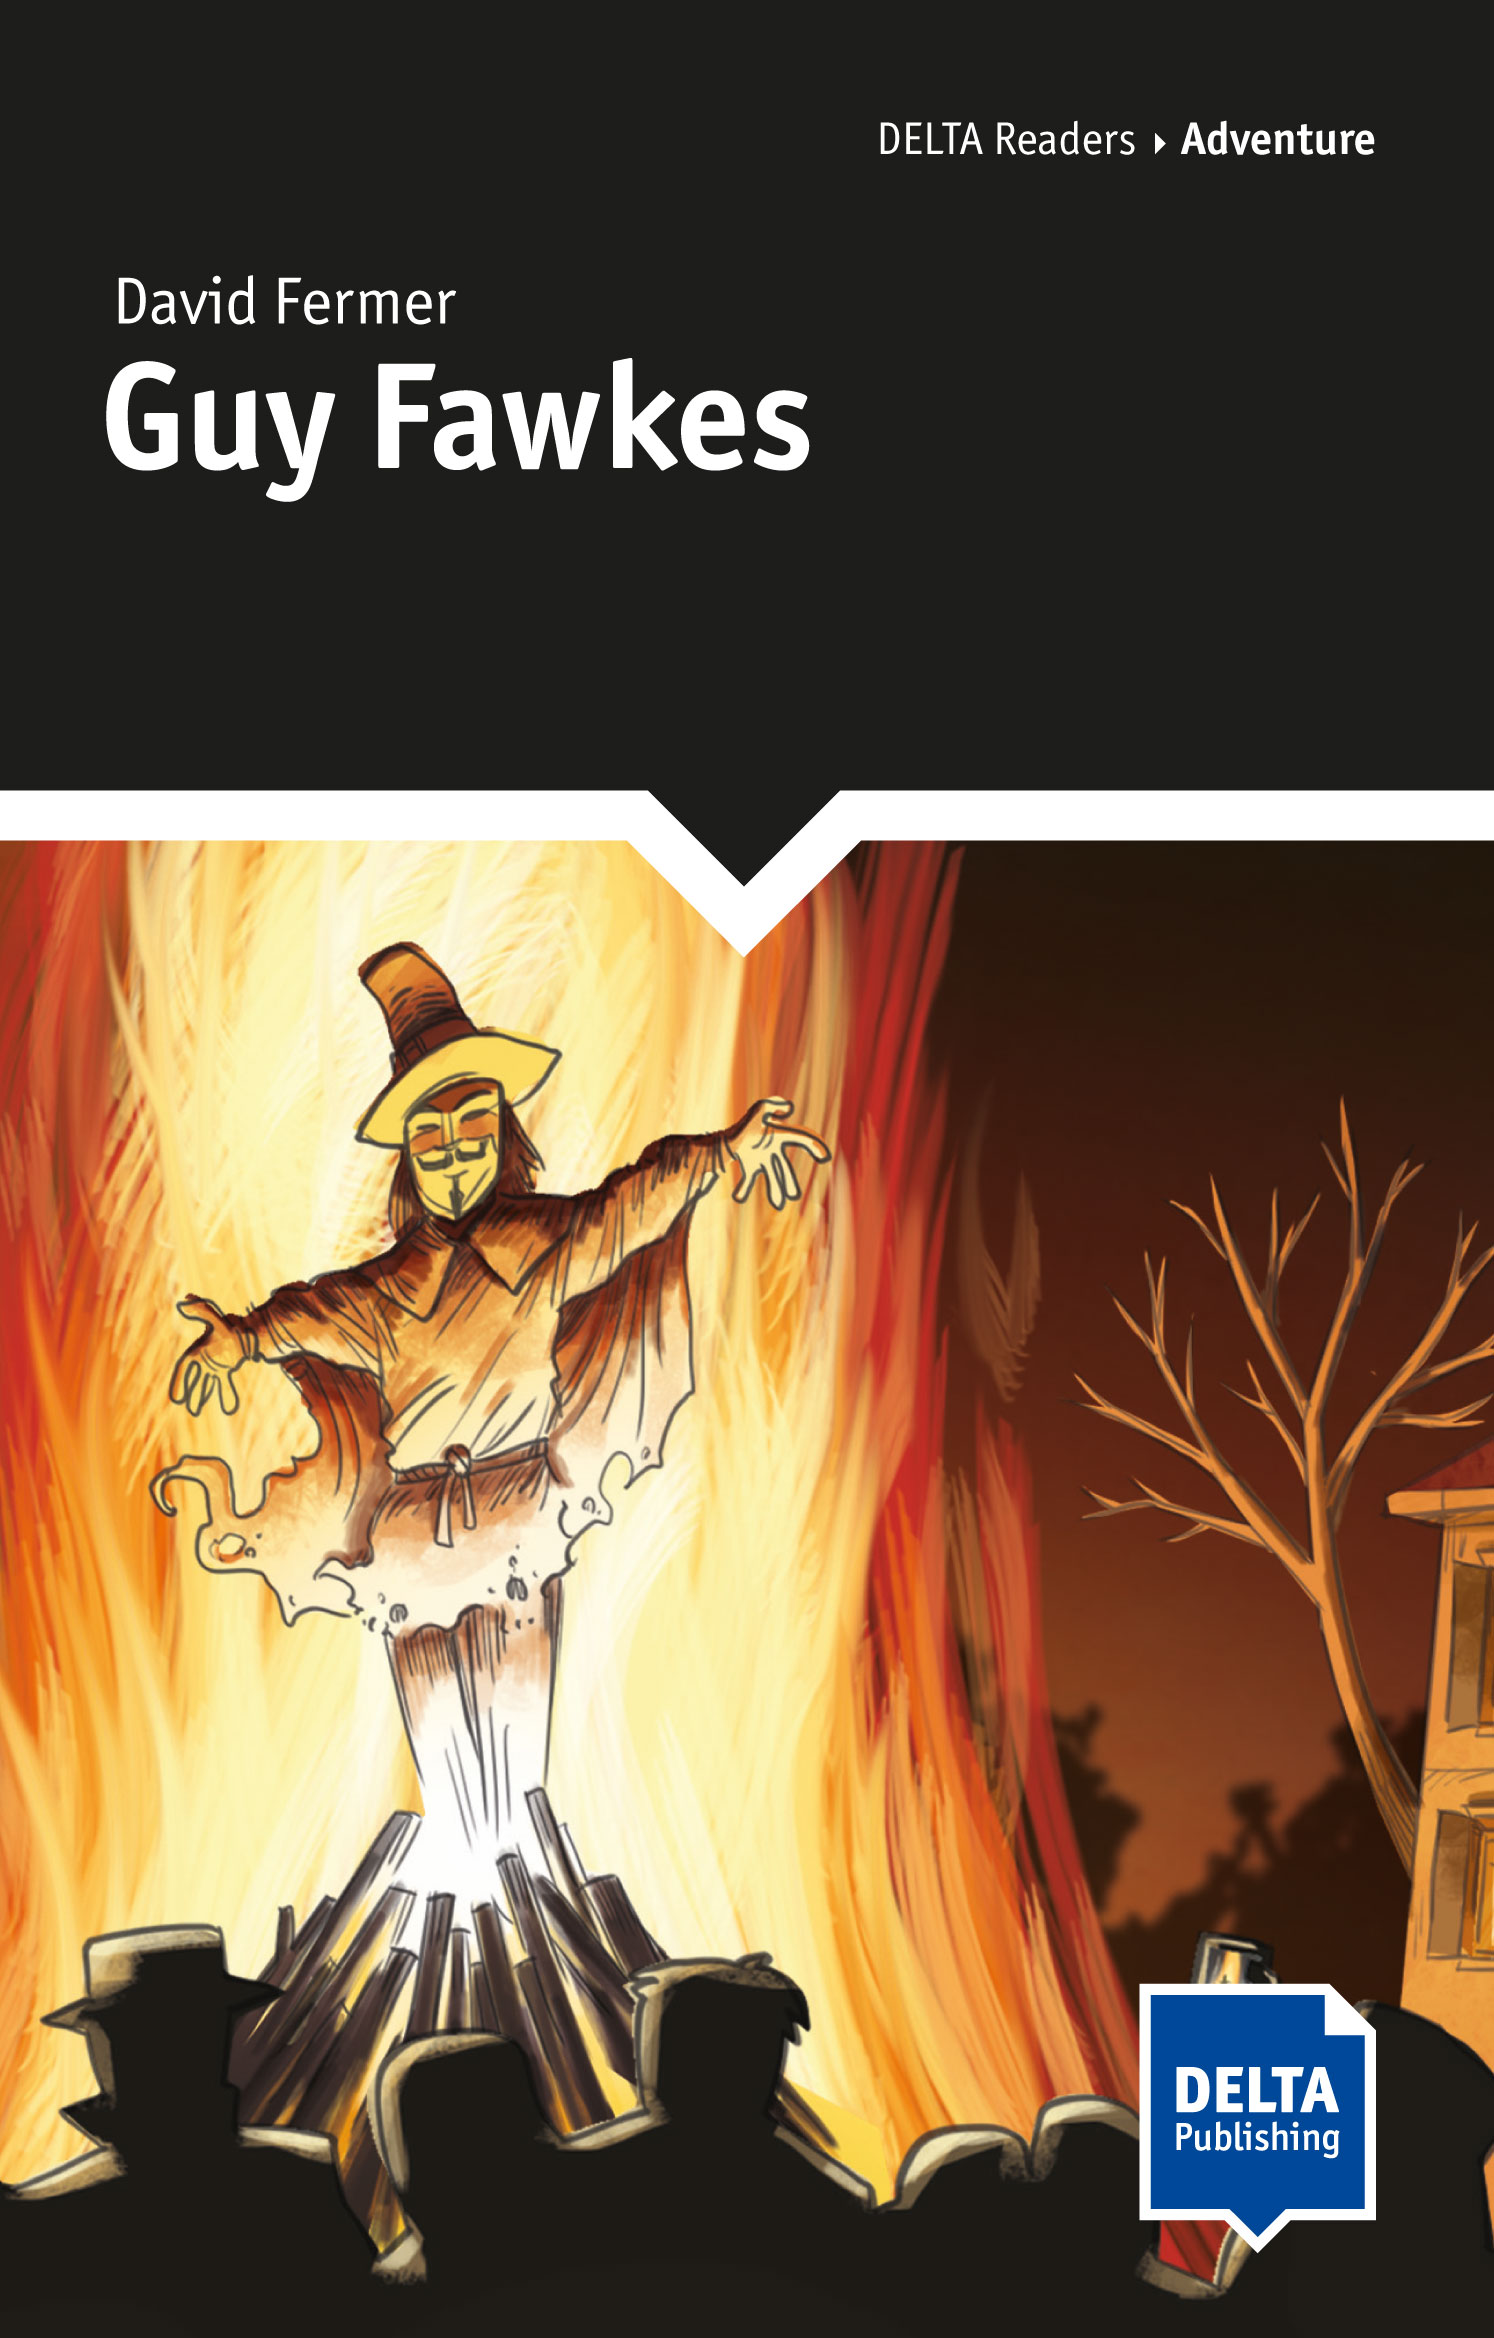 Guy Fawkes: Betrayal In English History